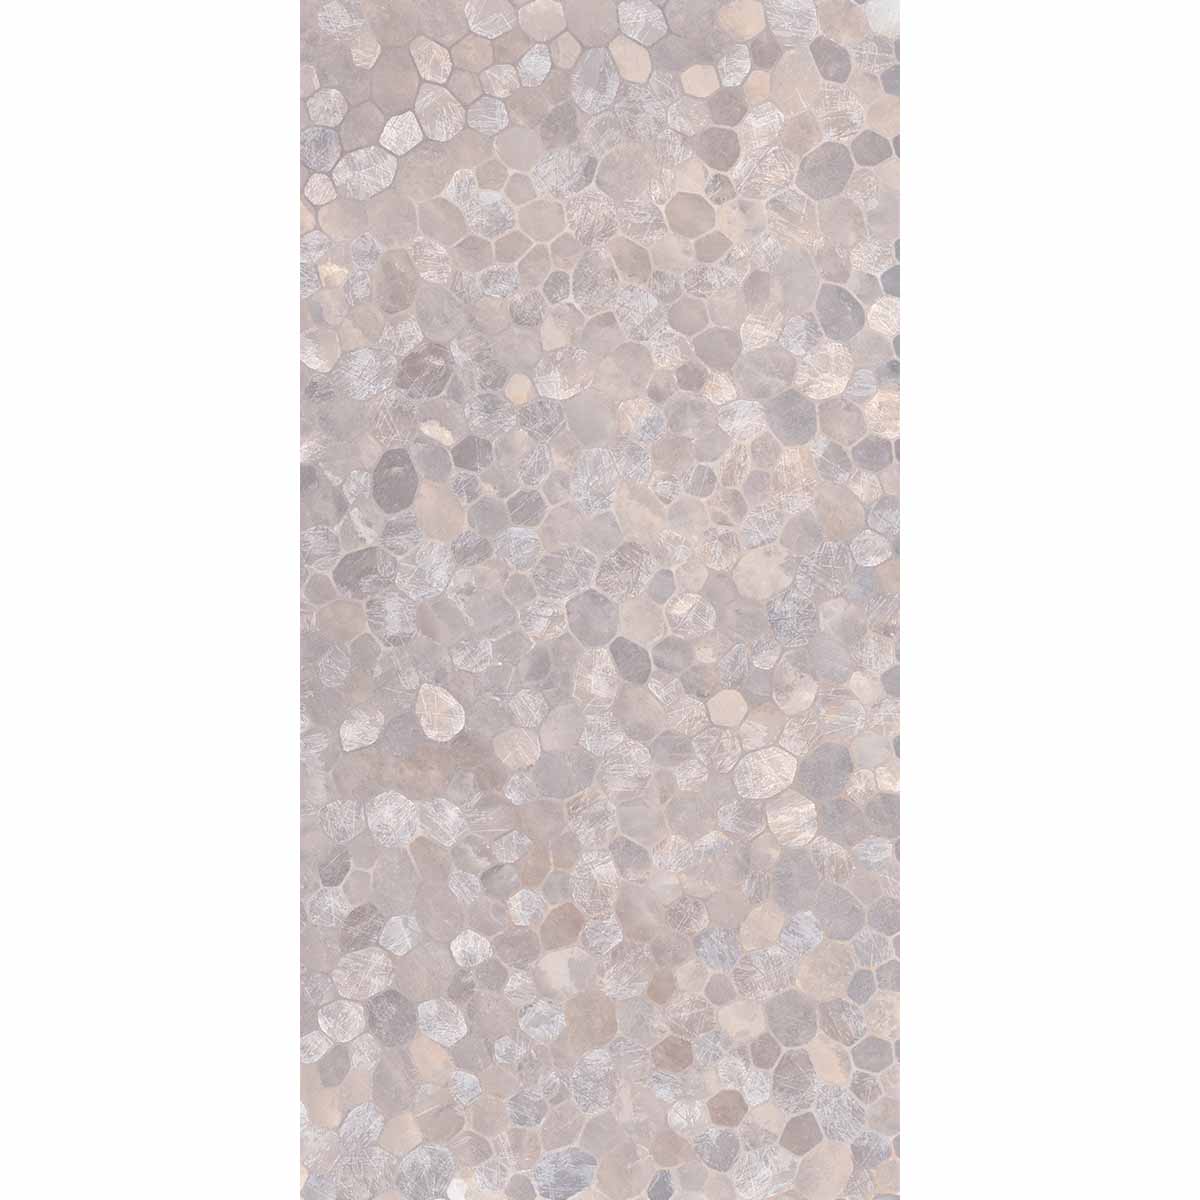 JOB LOT - Riviera Onyx Decor Purple Rock Salt Effect Porcelain Tile 59x119cm Matt - 45.44m2